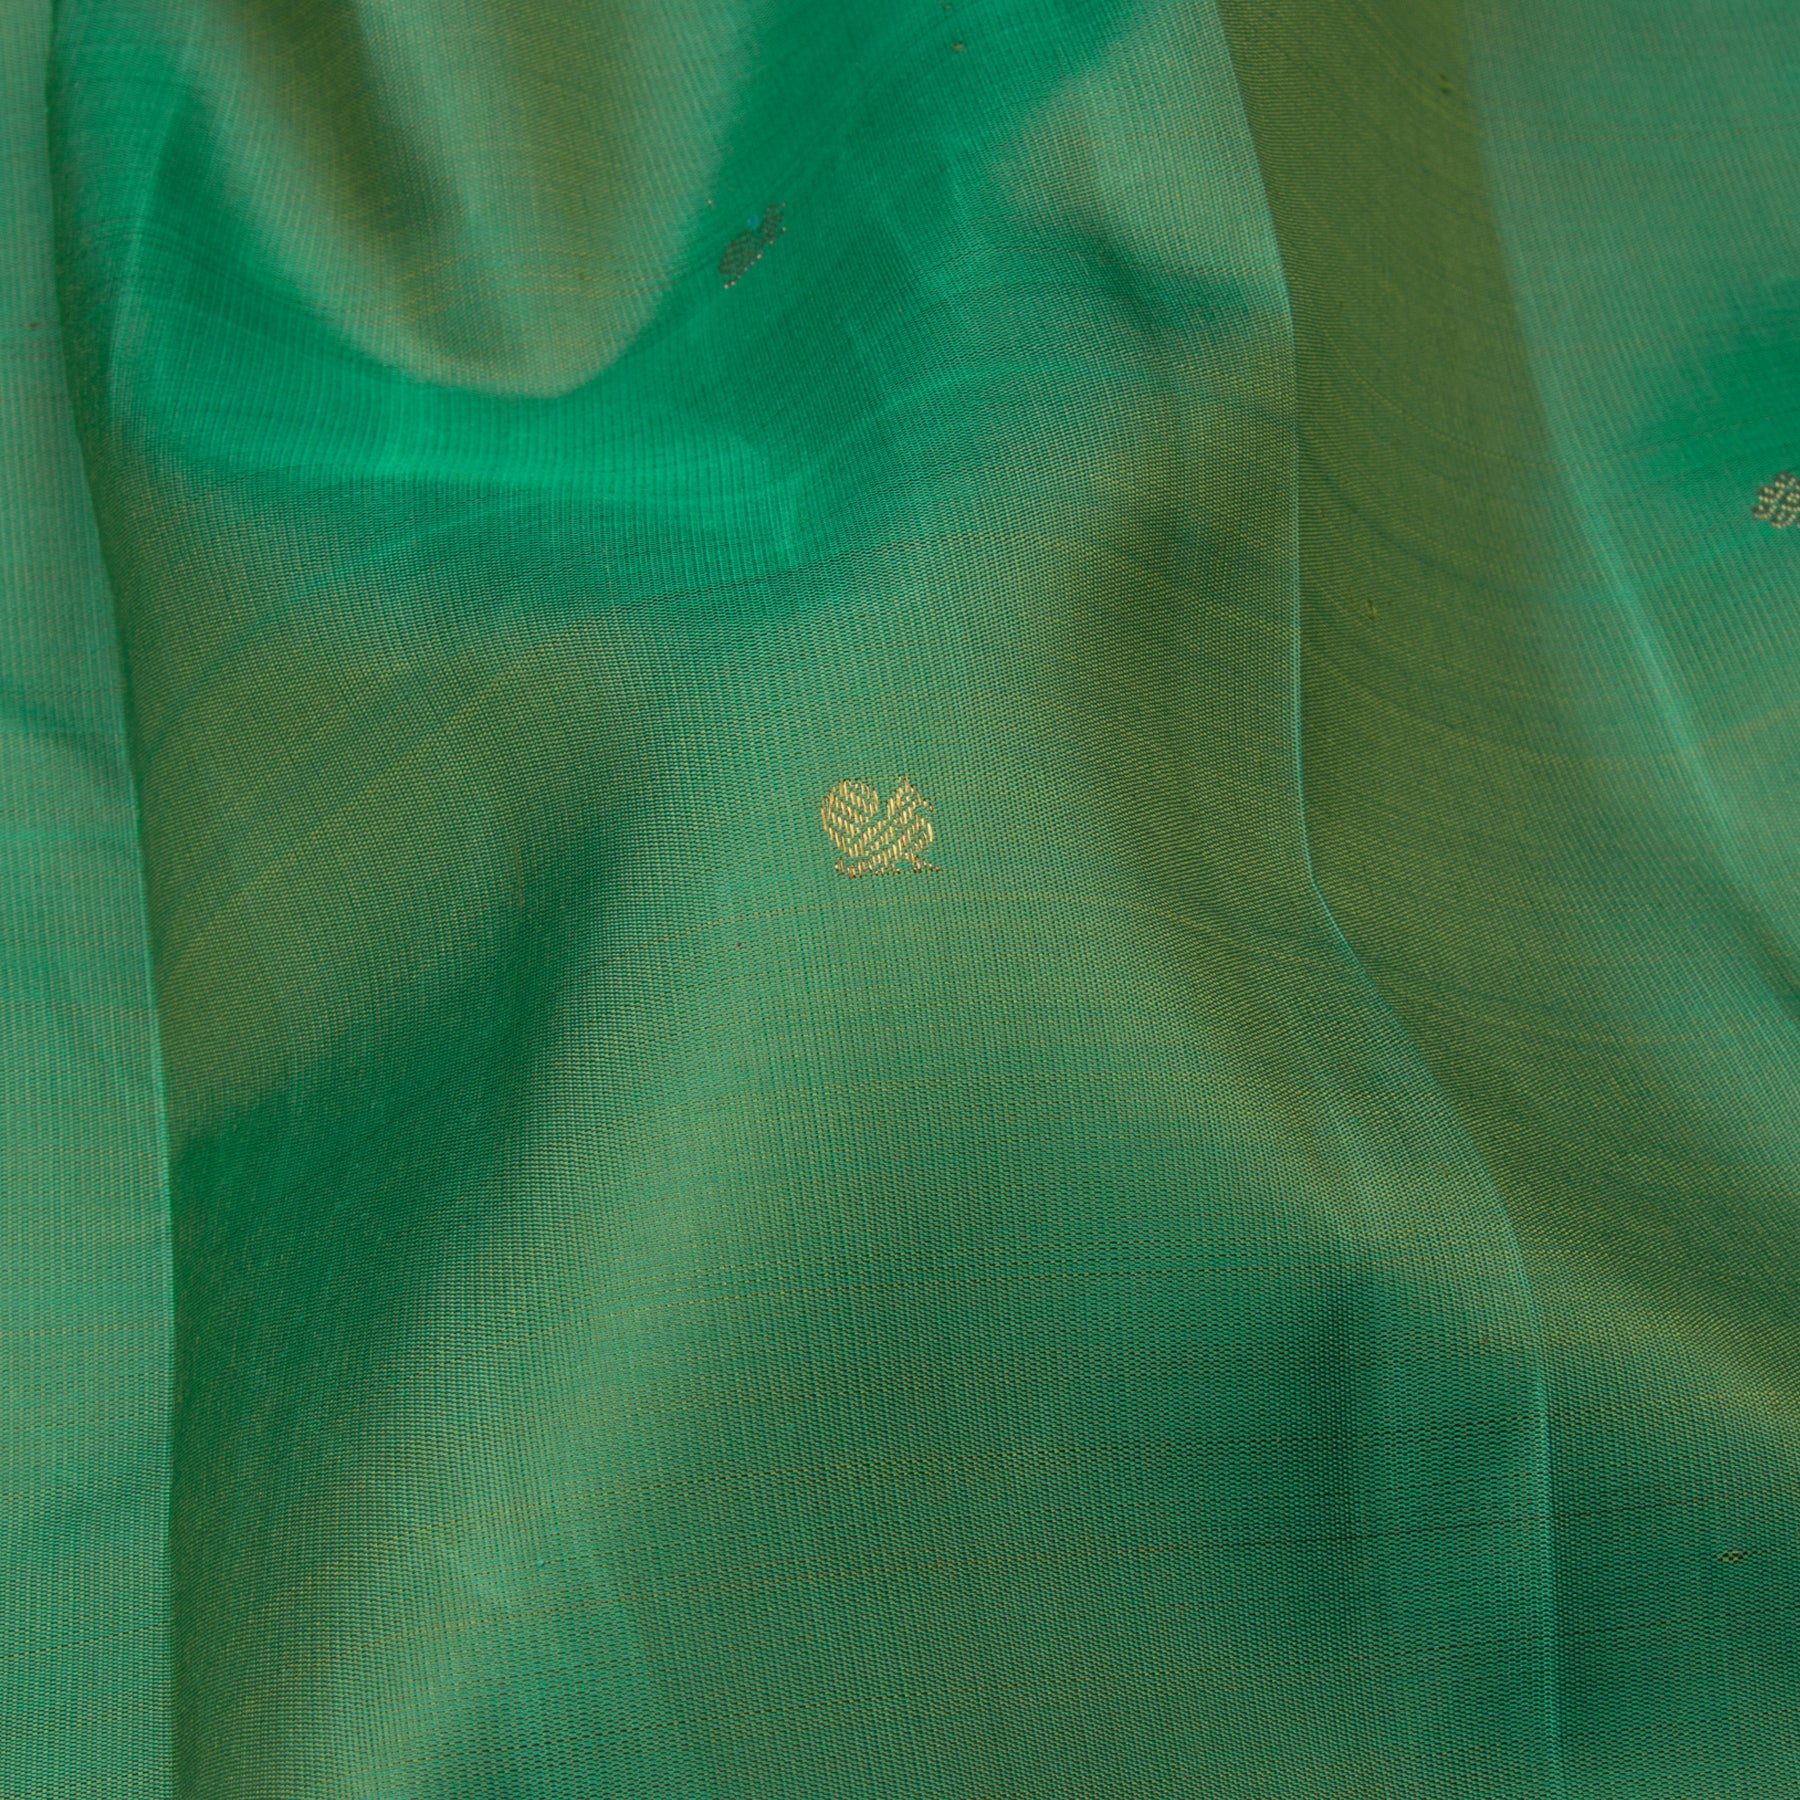 Kanakavalli Kanjivaram Silk Sari 23-110-HS001-14314 - Fabric View